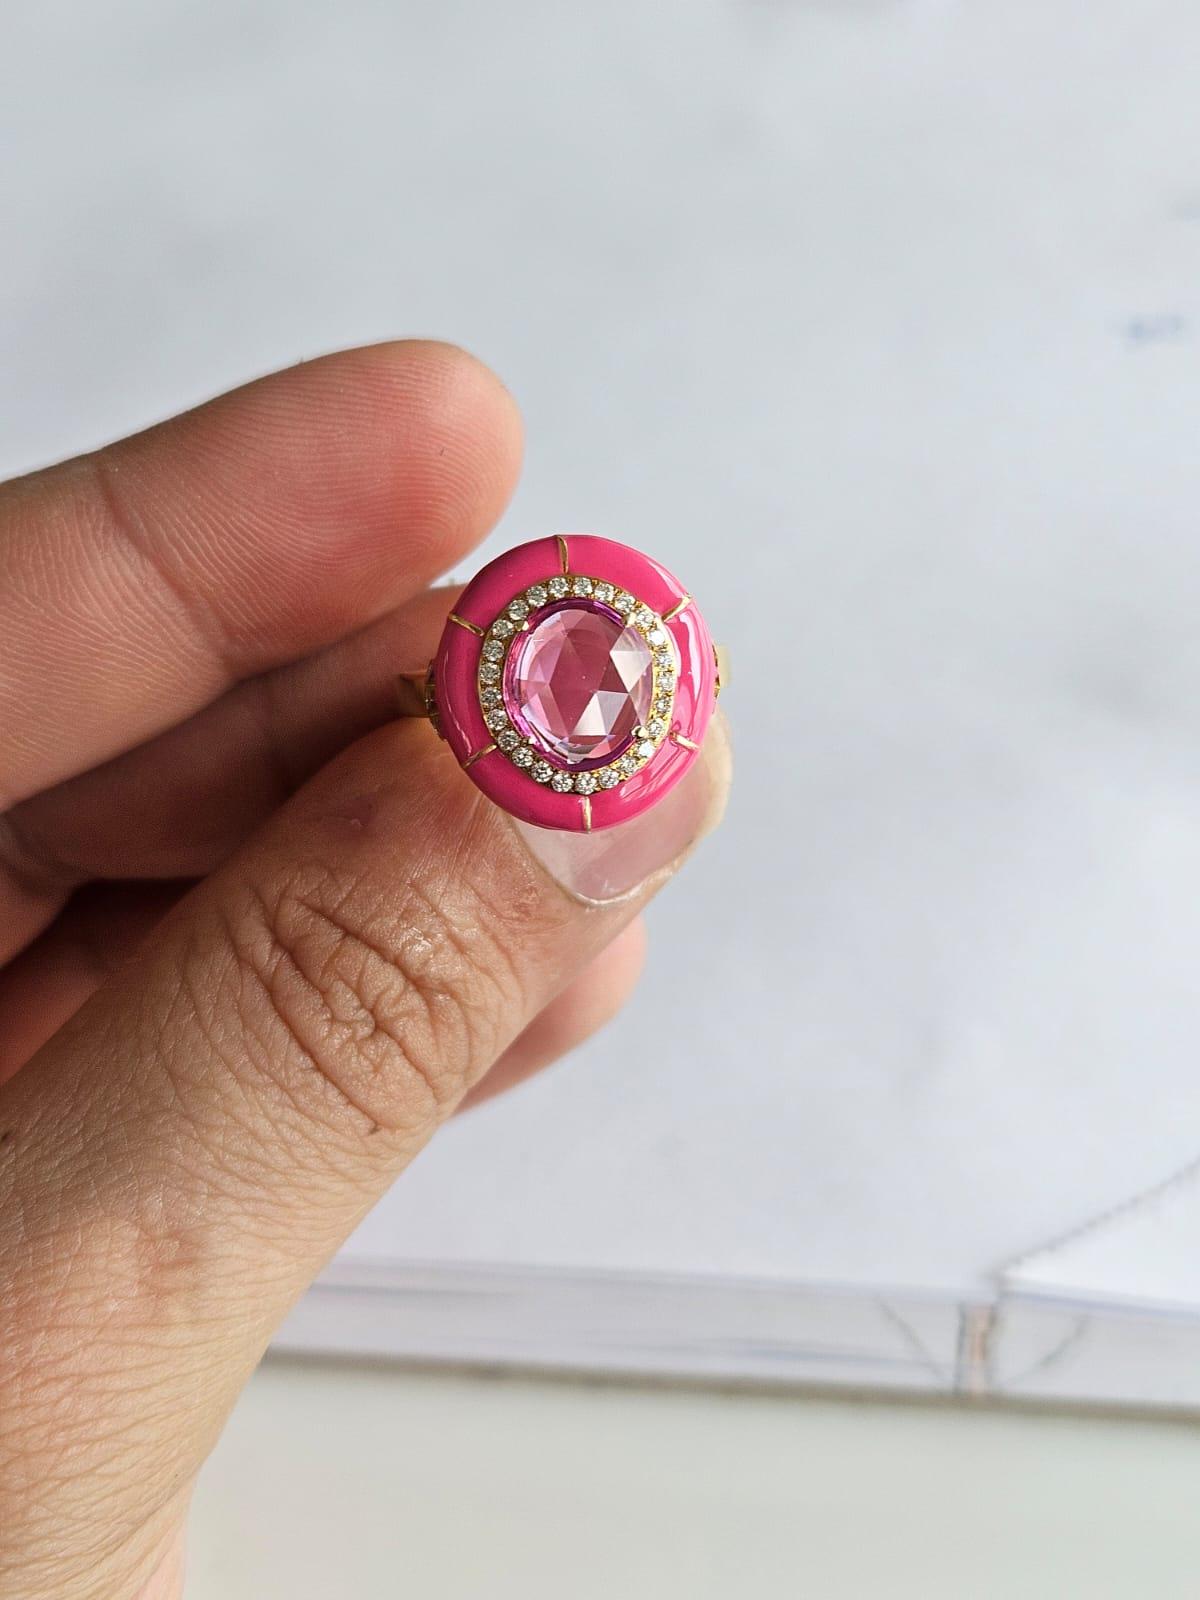 Ein atemberaubender und wunderschöner, moderner Verlobungsring mit rosa Saphir in 18K Gelbgold und Diamanten. Das Gewicht des rosa Saphirs im Rosenschliff beträgt 1.75 Karat. Der rosa Saphir stammt aus Ceylon (Sri Lanka). Das Gewicht der Diamanten